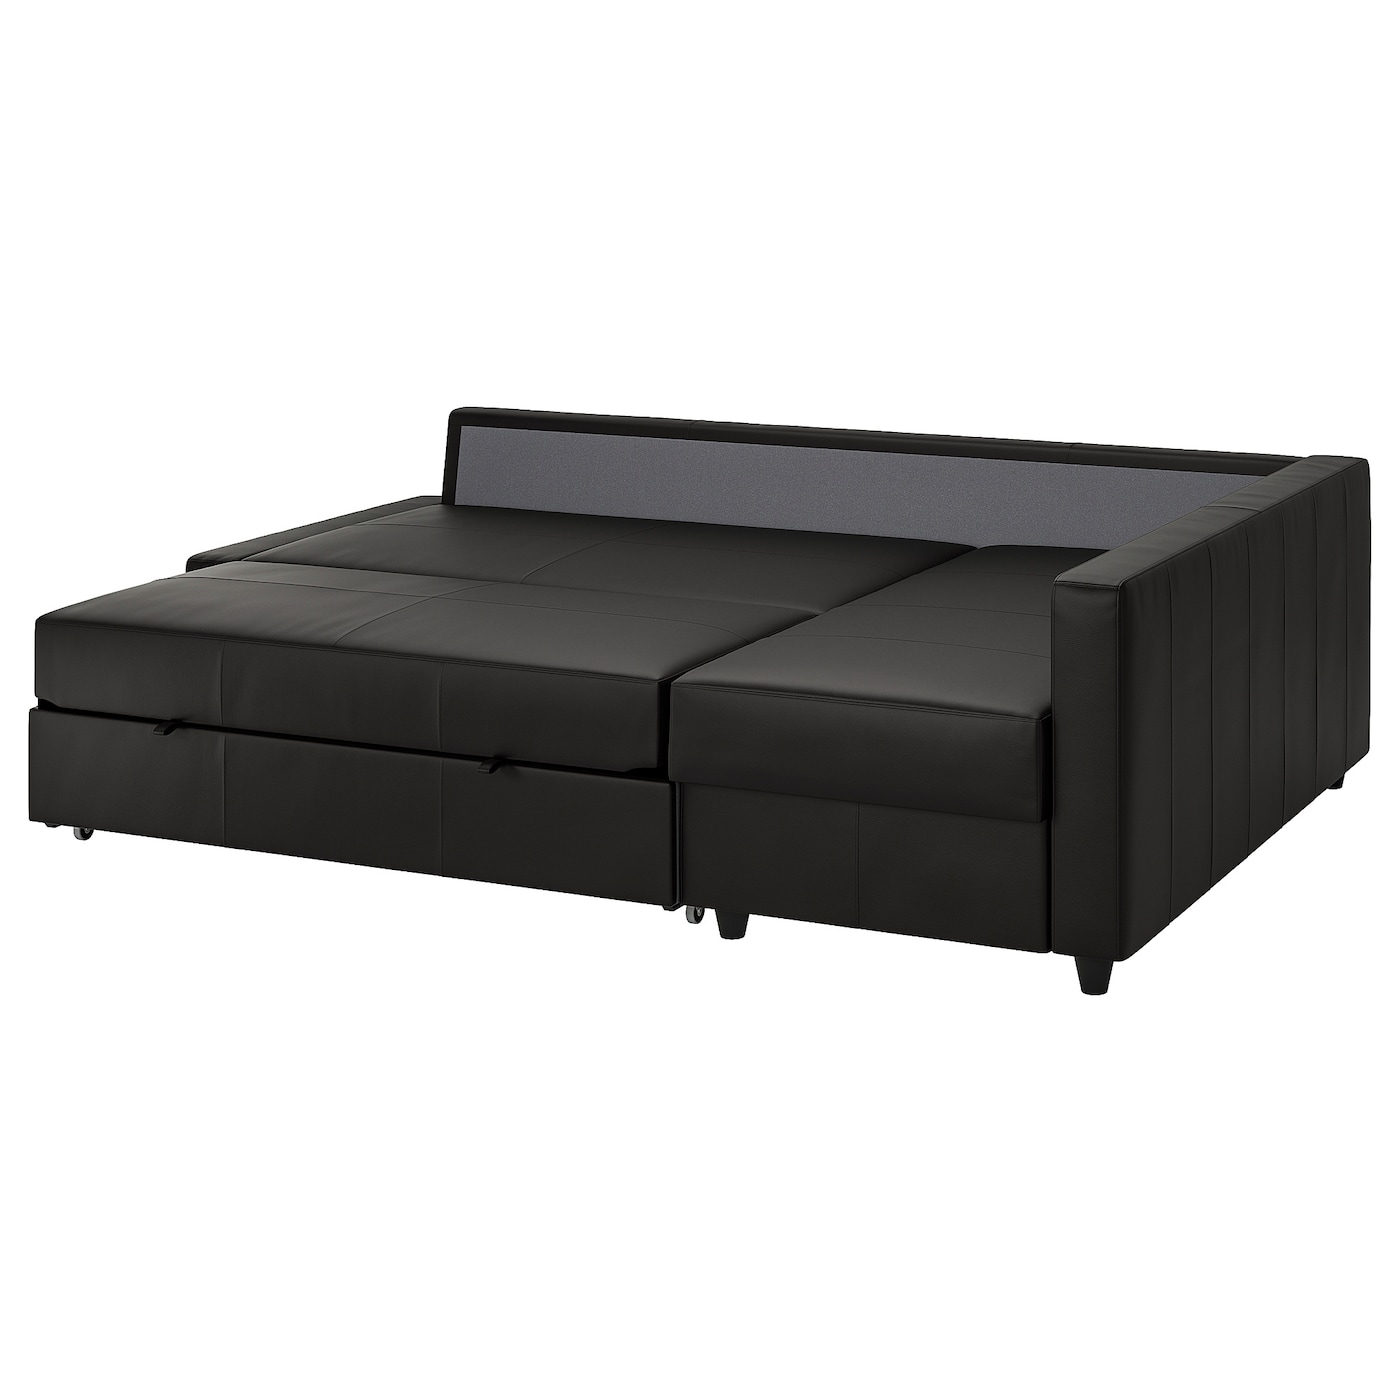 ФРИХЕТЕН Угловой диван-кровать + место для хранения, Бомстад черный FRIHETEN IKEA диван кровать лора тд 328